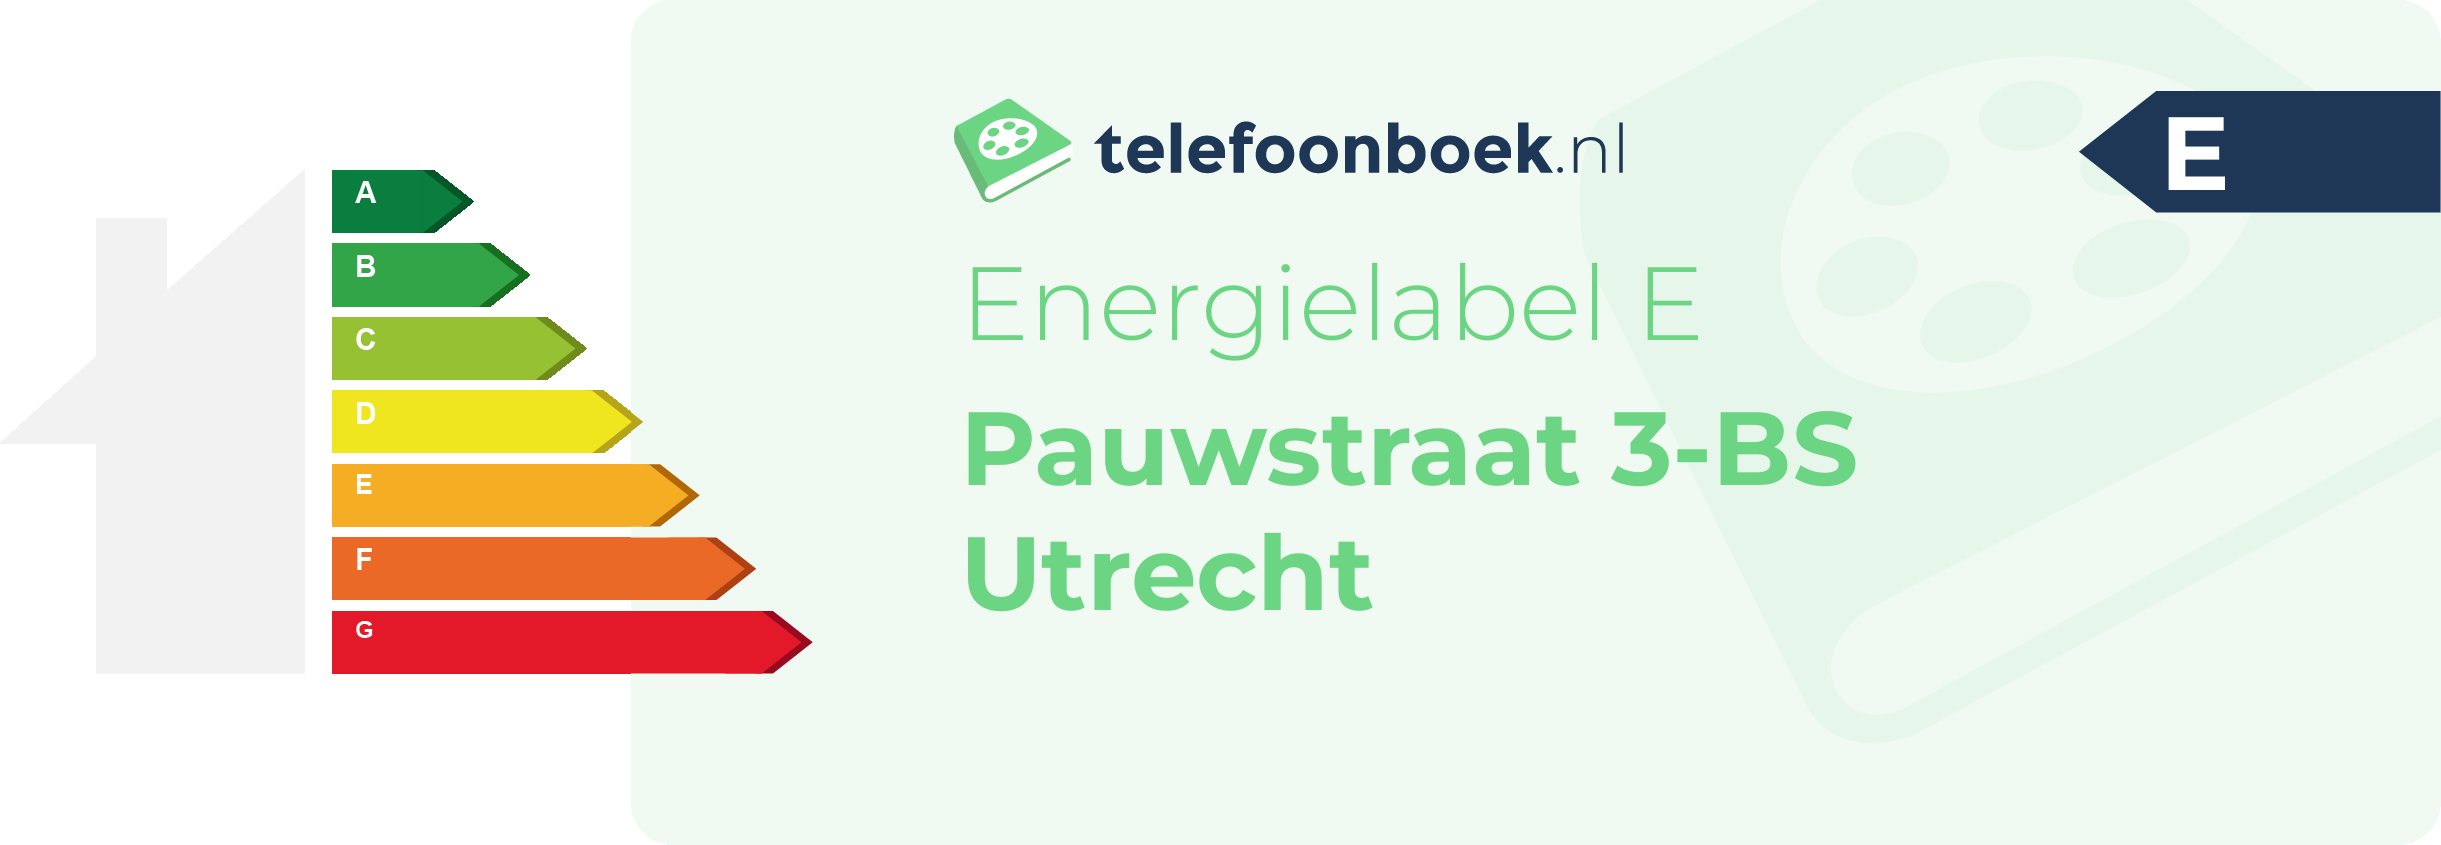 Energielabel Pauwstraat 3-BS Utrecht